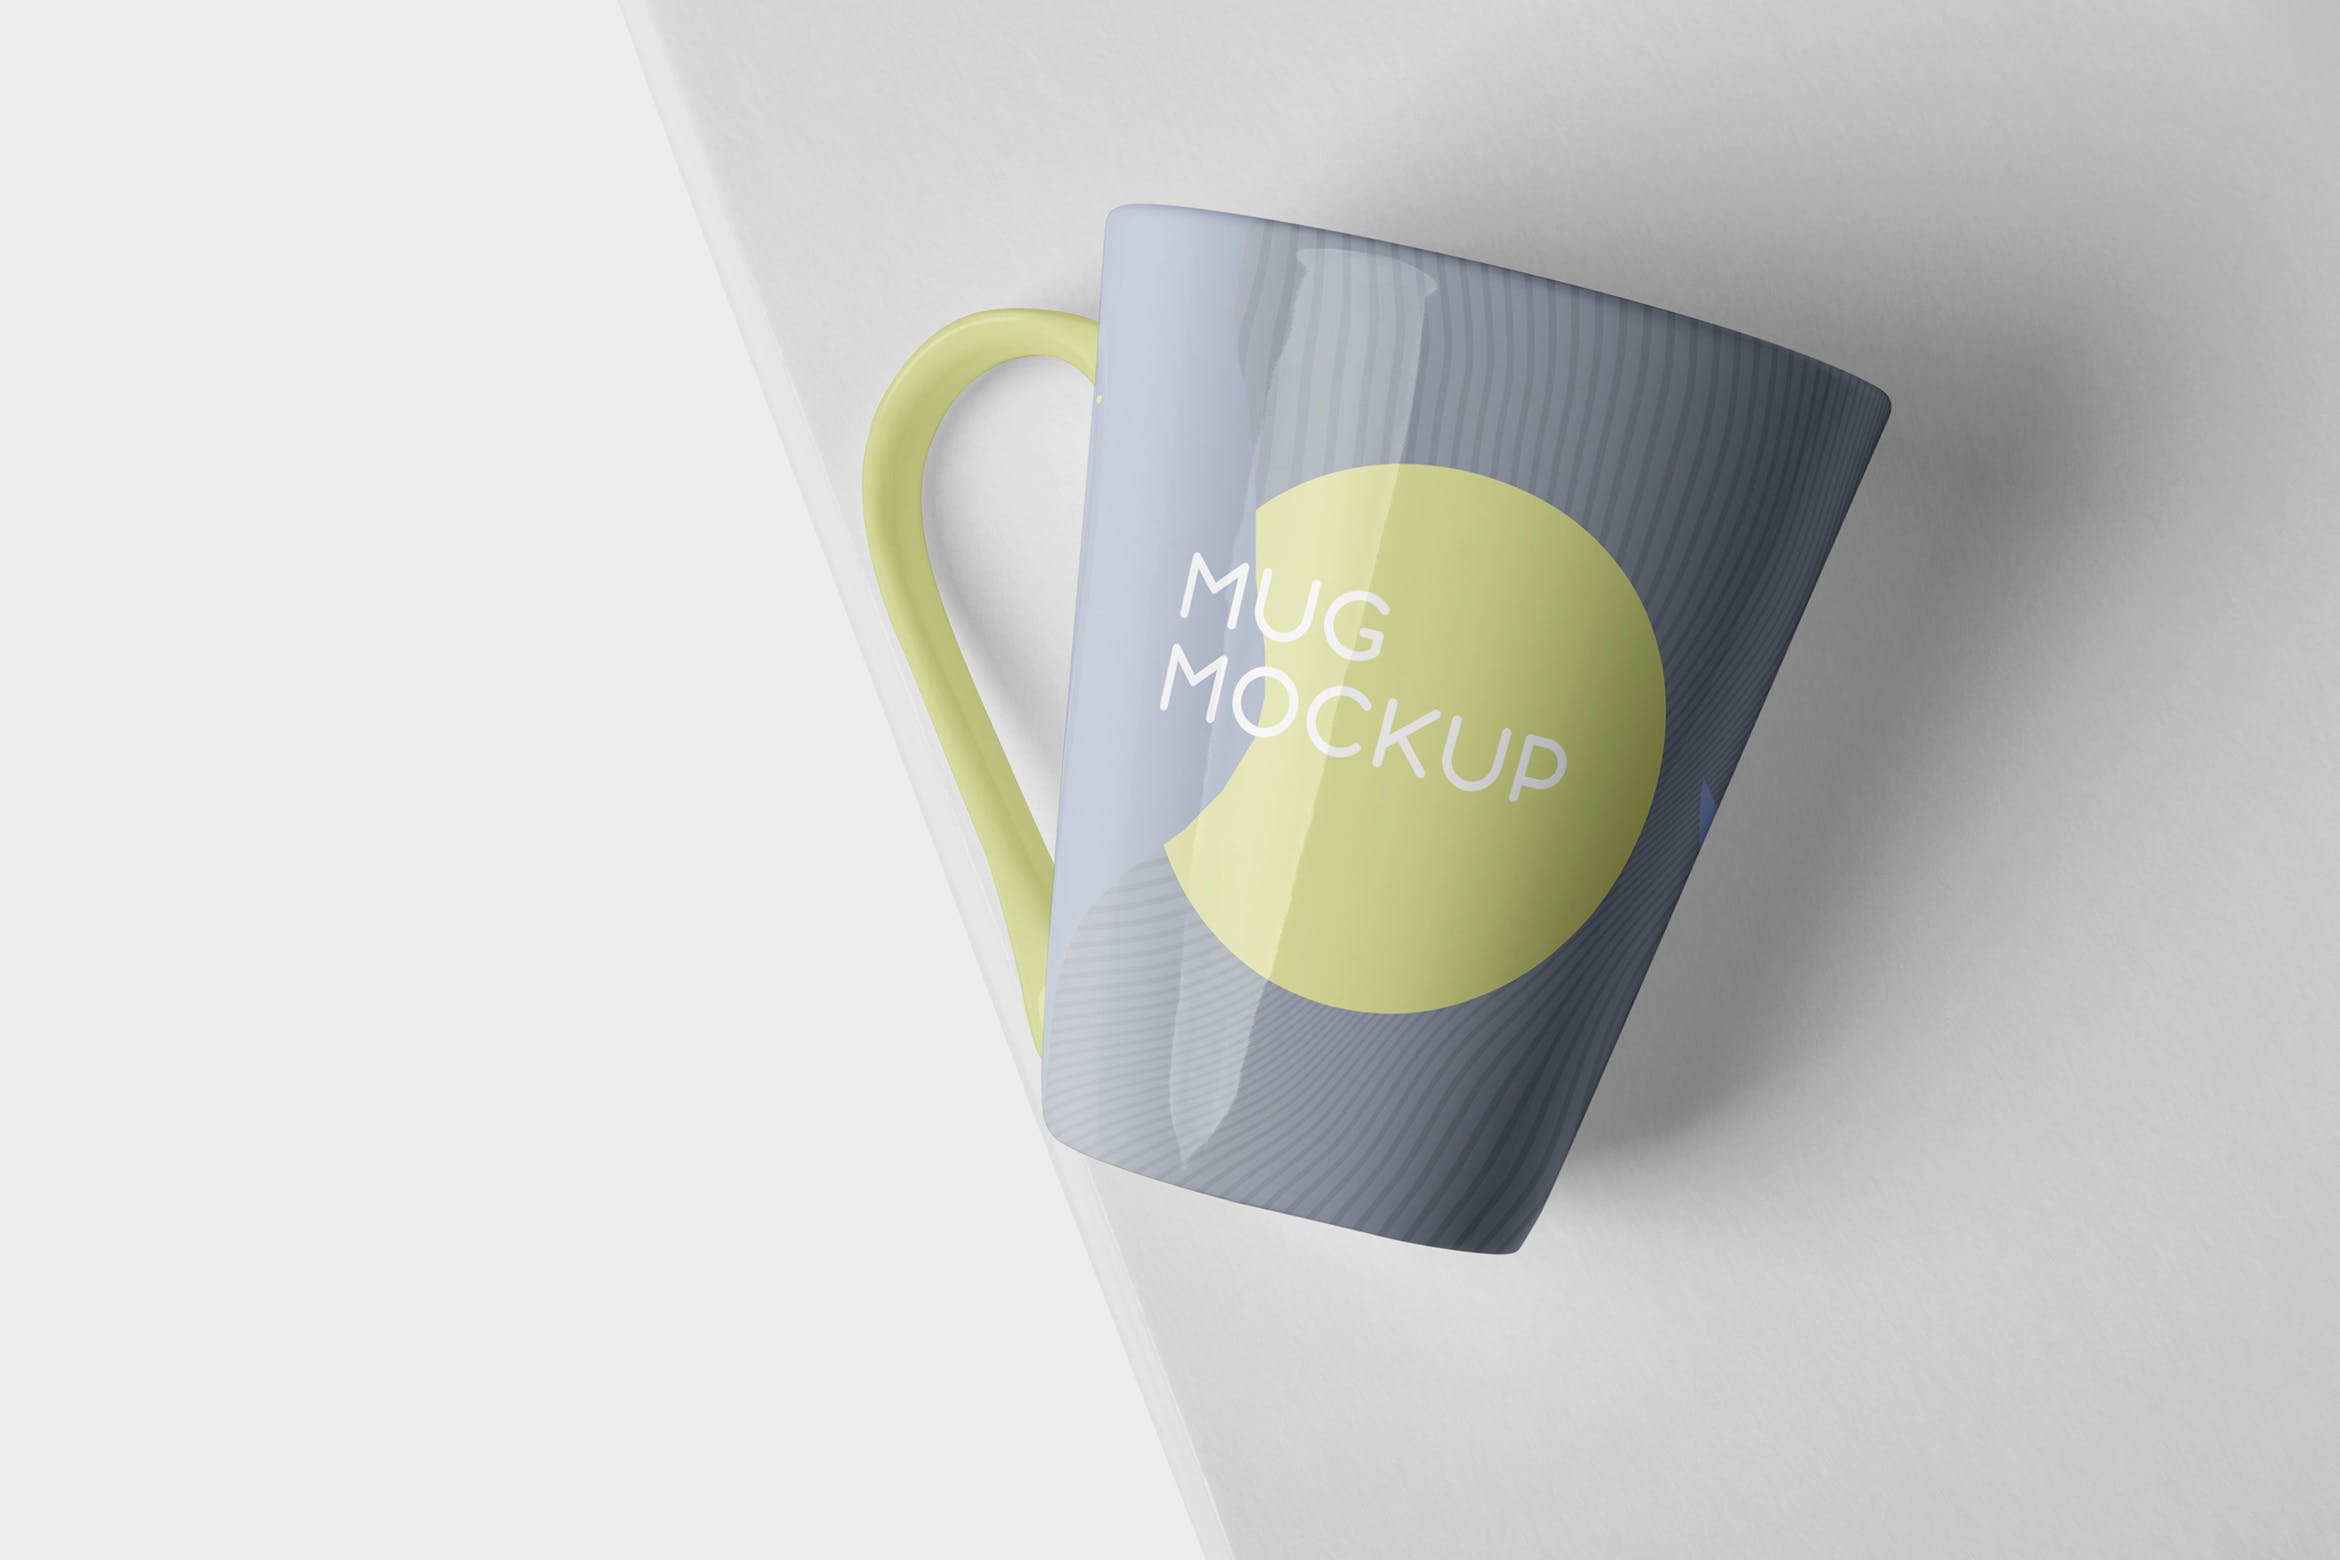 锥形马克杯图案设计素材库精选 Mug Mockup – Cone Shaped插图